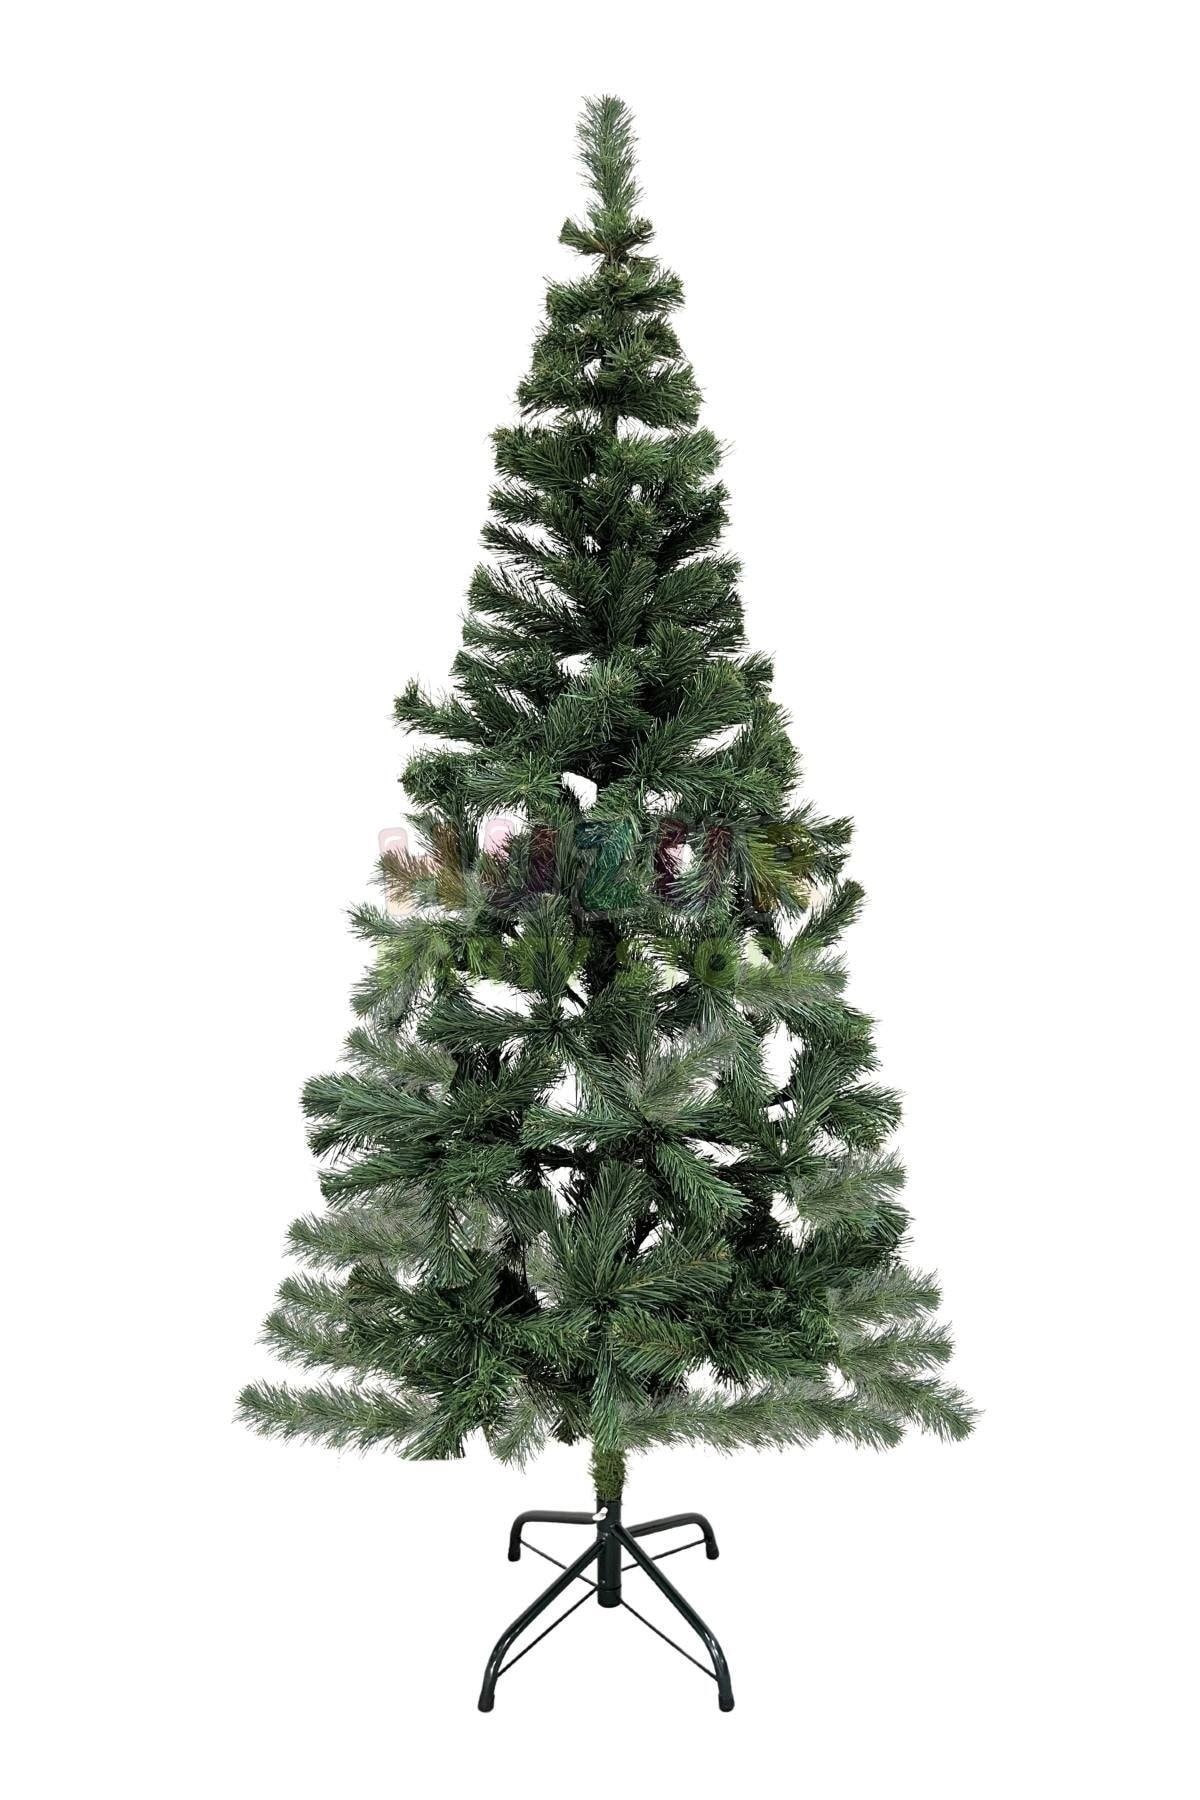 Huzur Party Store 150 Cm Lüks Yılbaşı Çam Ağacı 220 Dallı Yeni Yıl Noel Ağacı Metal Ayaklı Demir Gövdeli 1. Kalite